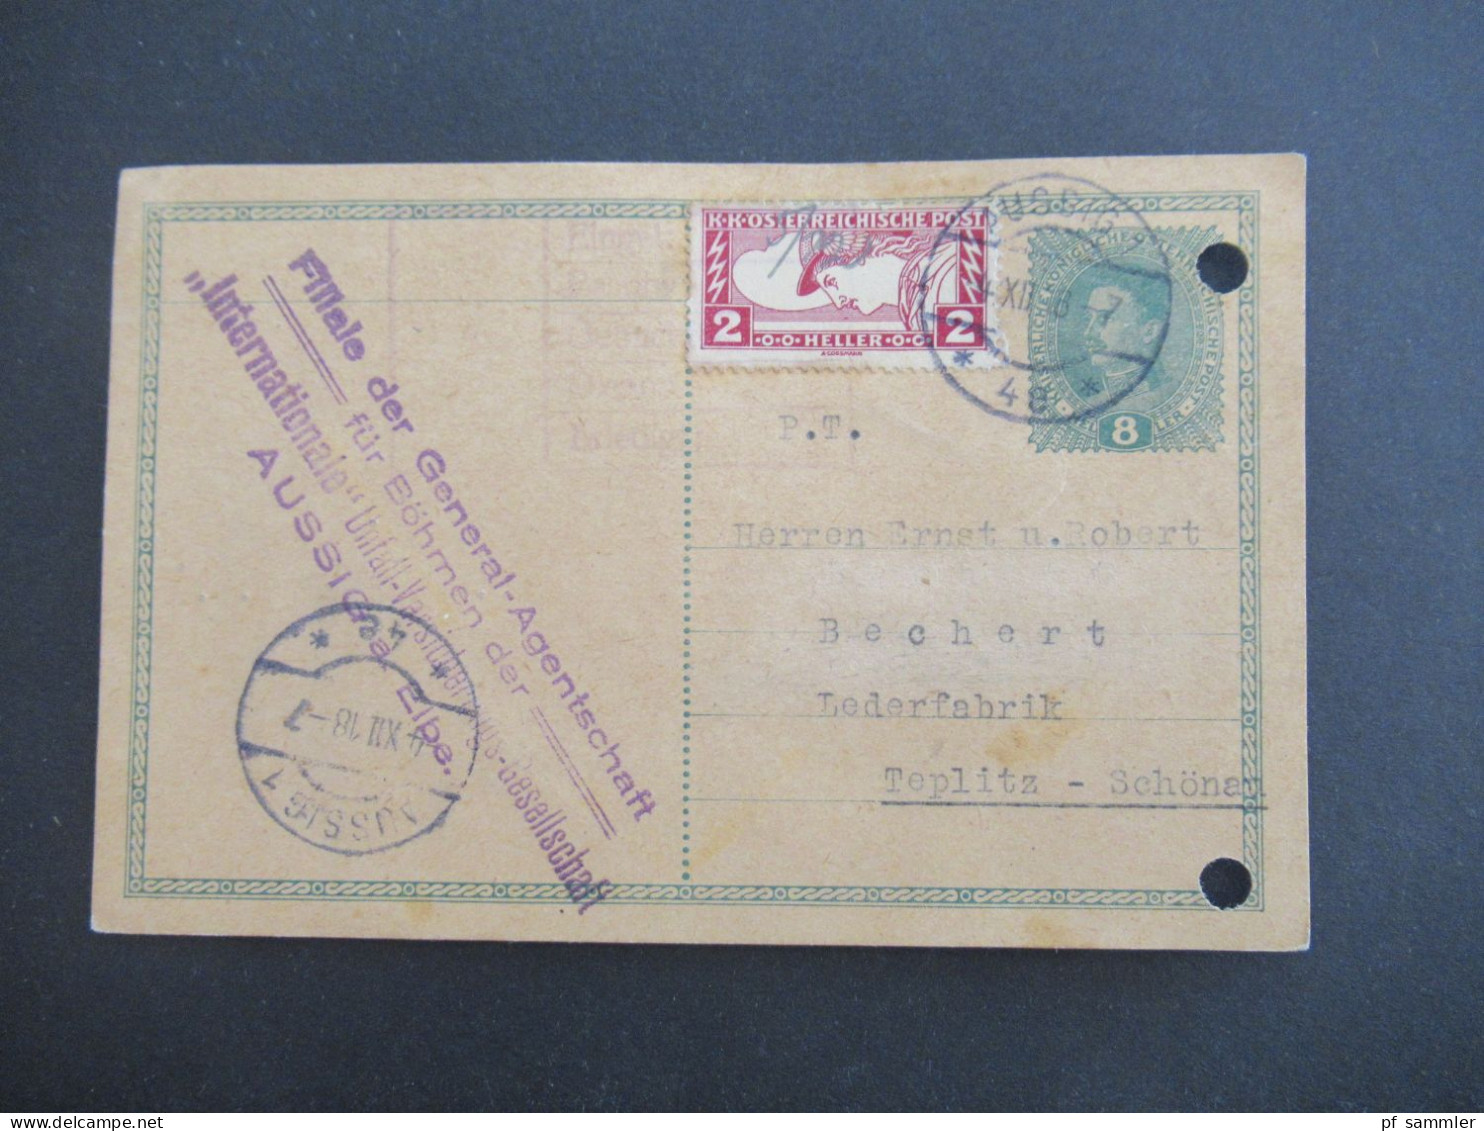 Österreich / Sudeten 1918 Ganzsache 8 Heller Mit Zusatzfrankatur Drucksachen Eilmarke Mi.Nr.219 Aussig - Teplitz Schönau - Cartoline